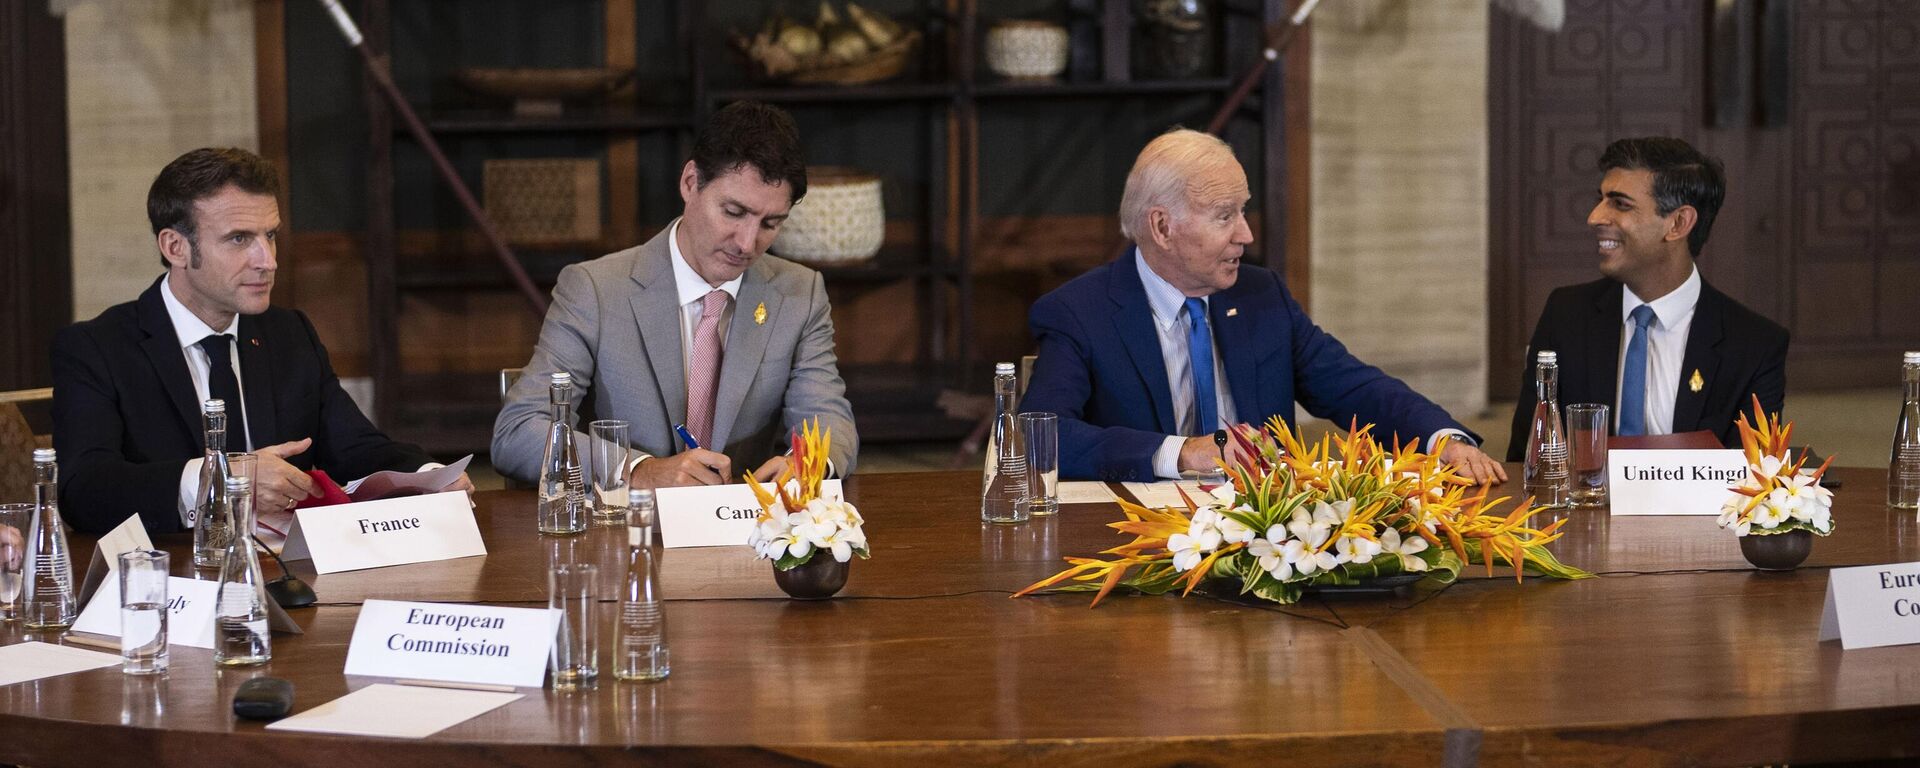 Председник Џо Бајден разговара са британским премијером Ришијем Сунаком док француски председник Емануел Макрон, лево, и канадски премијер Џастин Трудо слушају током састанка лидера Г7 и НАТО-а на Балију - Sputnik Србија, 1920, 20.11.2022